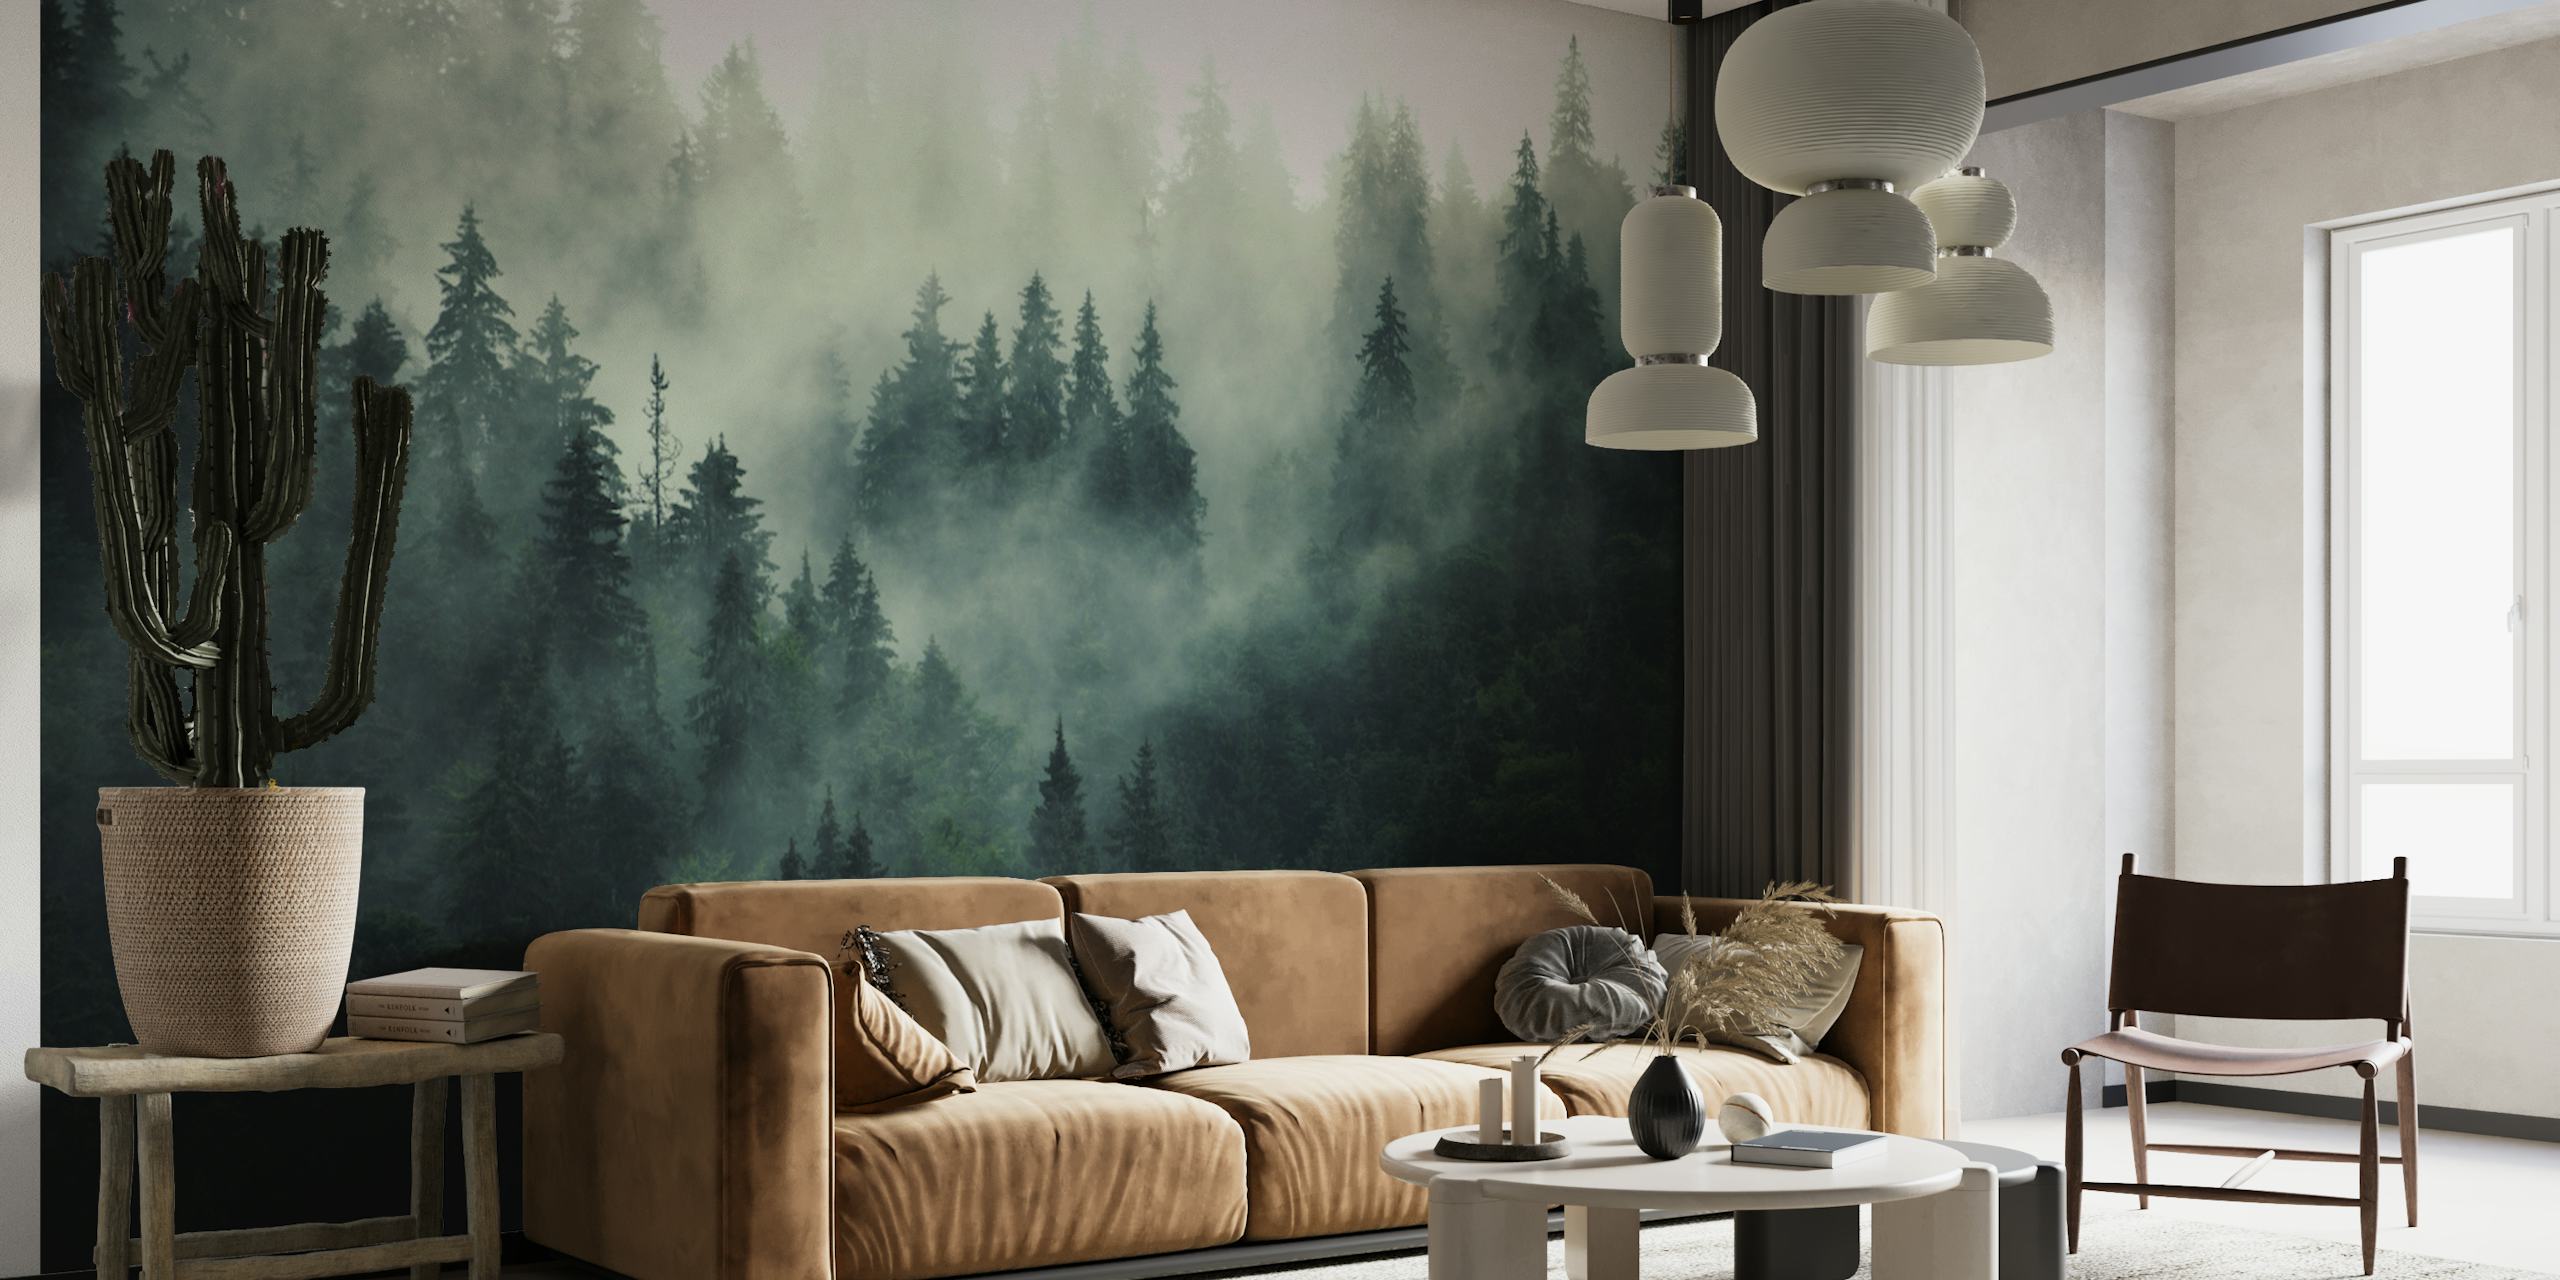 Misty forest beauty II wallpaper